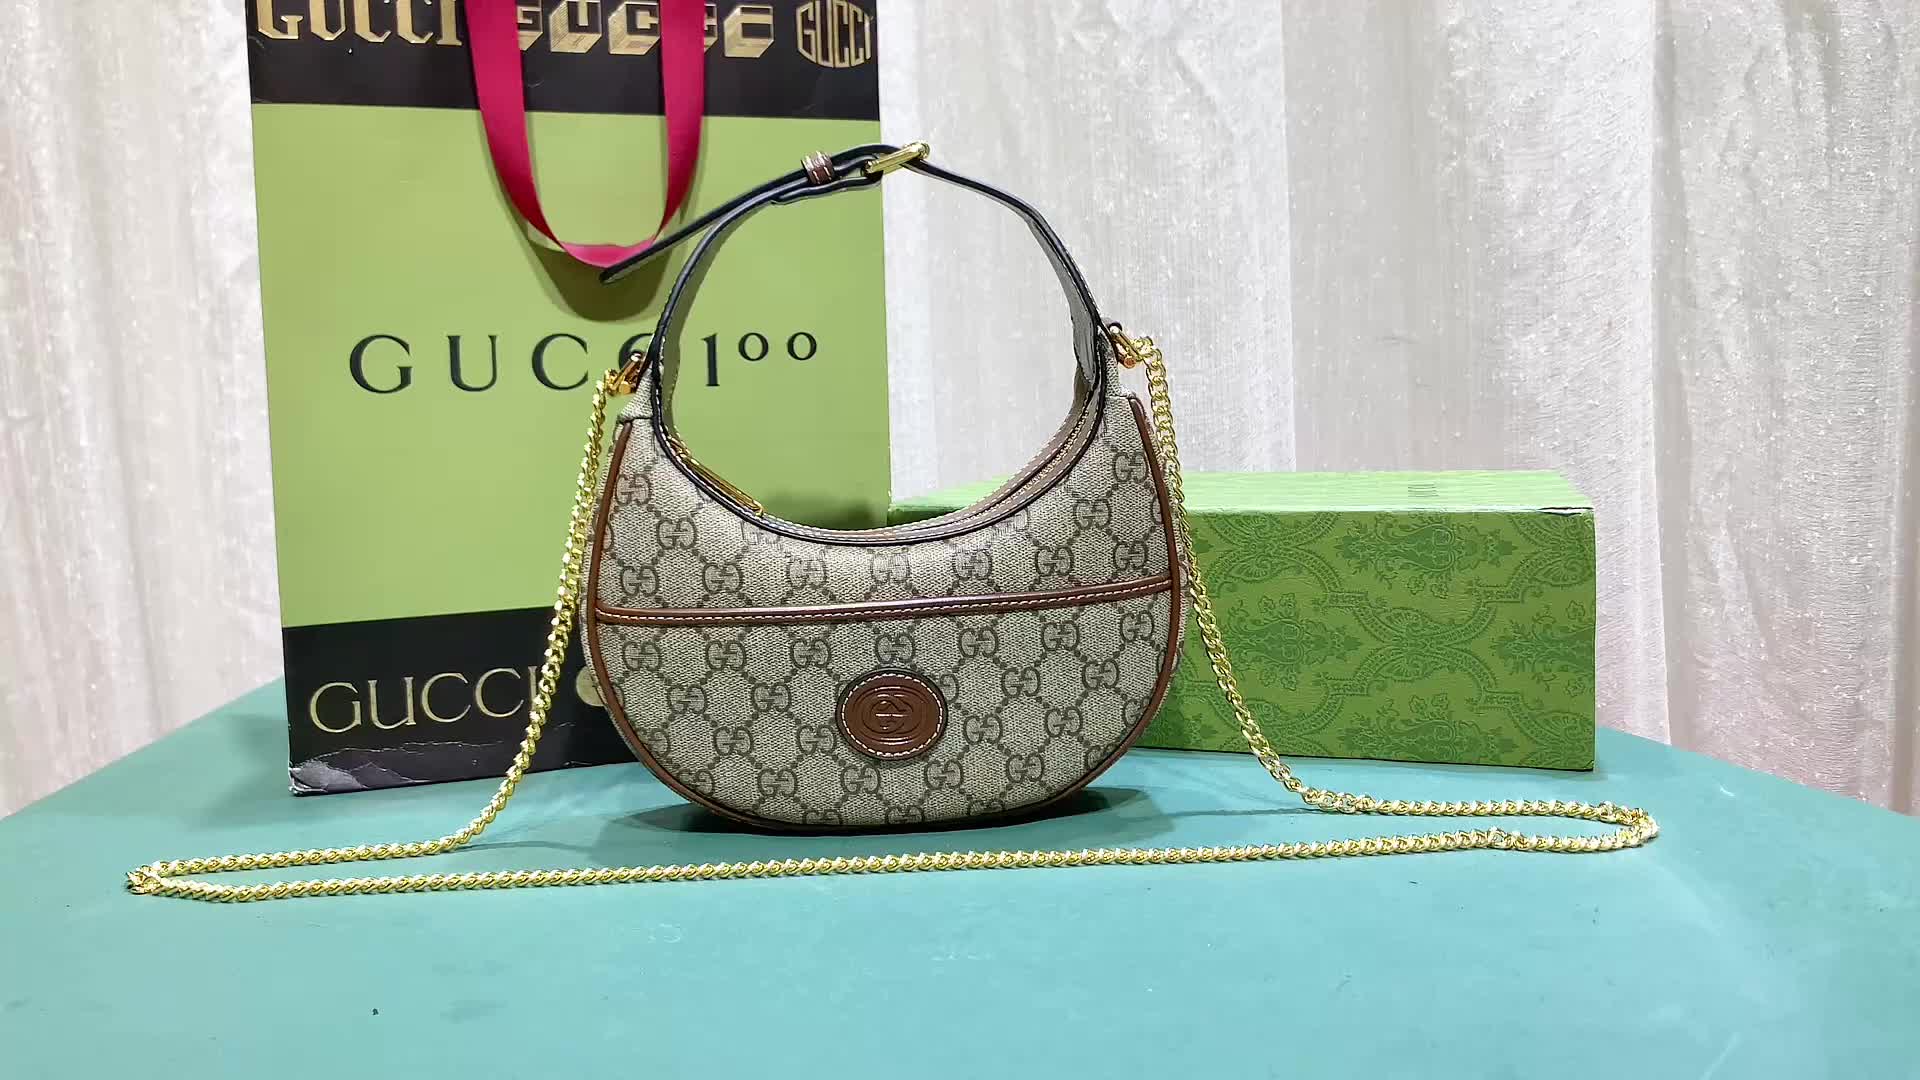 Gucci Bag-(4A)-Diagonal-,Code: HB2712,$: 79USD